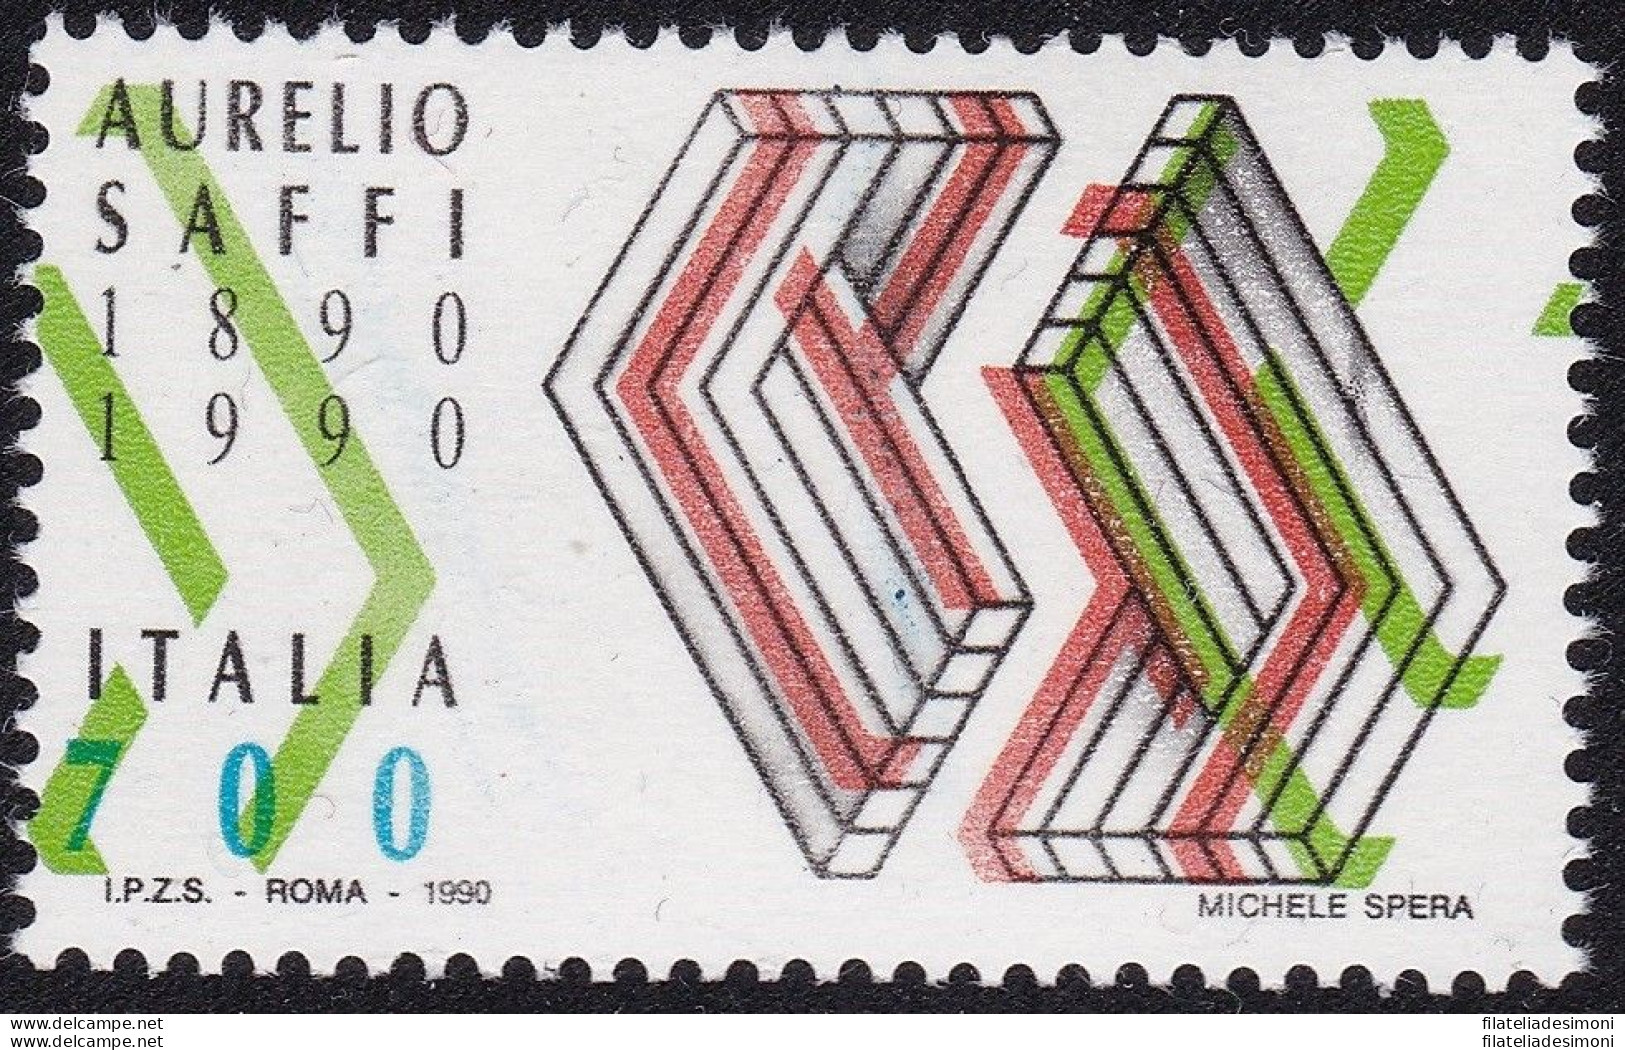 1990 Repubblica Italiana, N° 1931 VARIETA NON CATALOGATA - Varietà E Curiosità